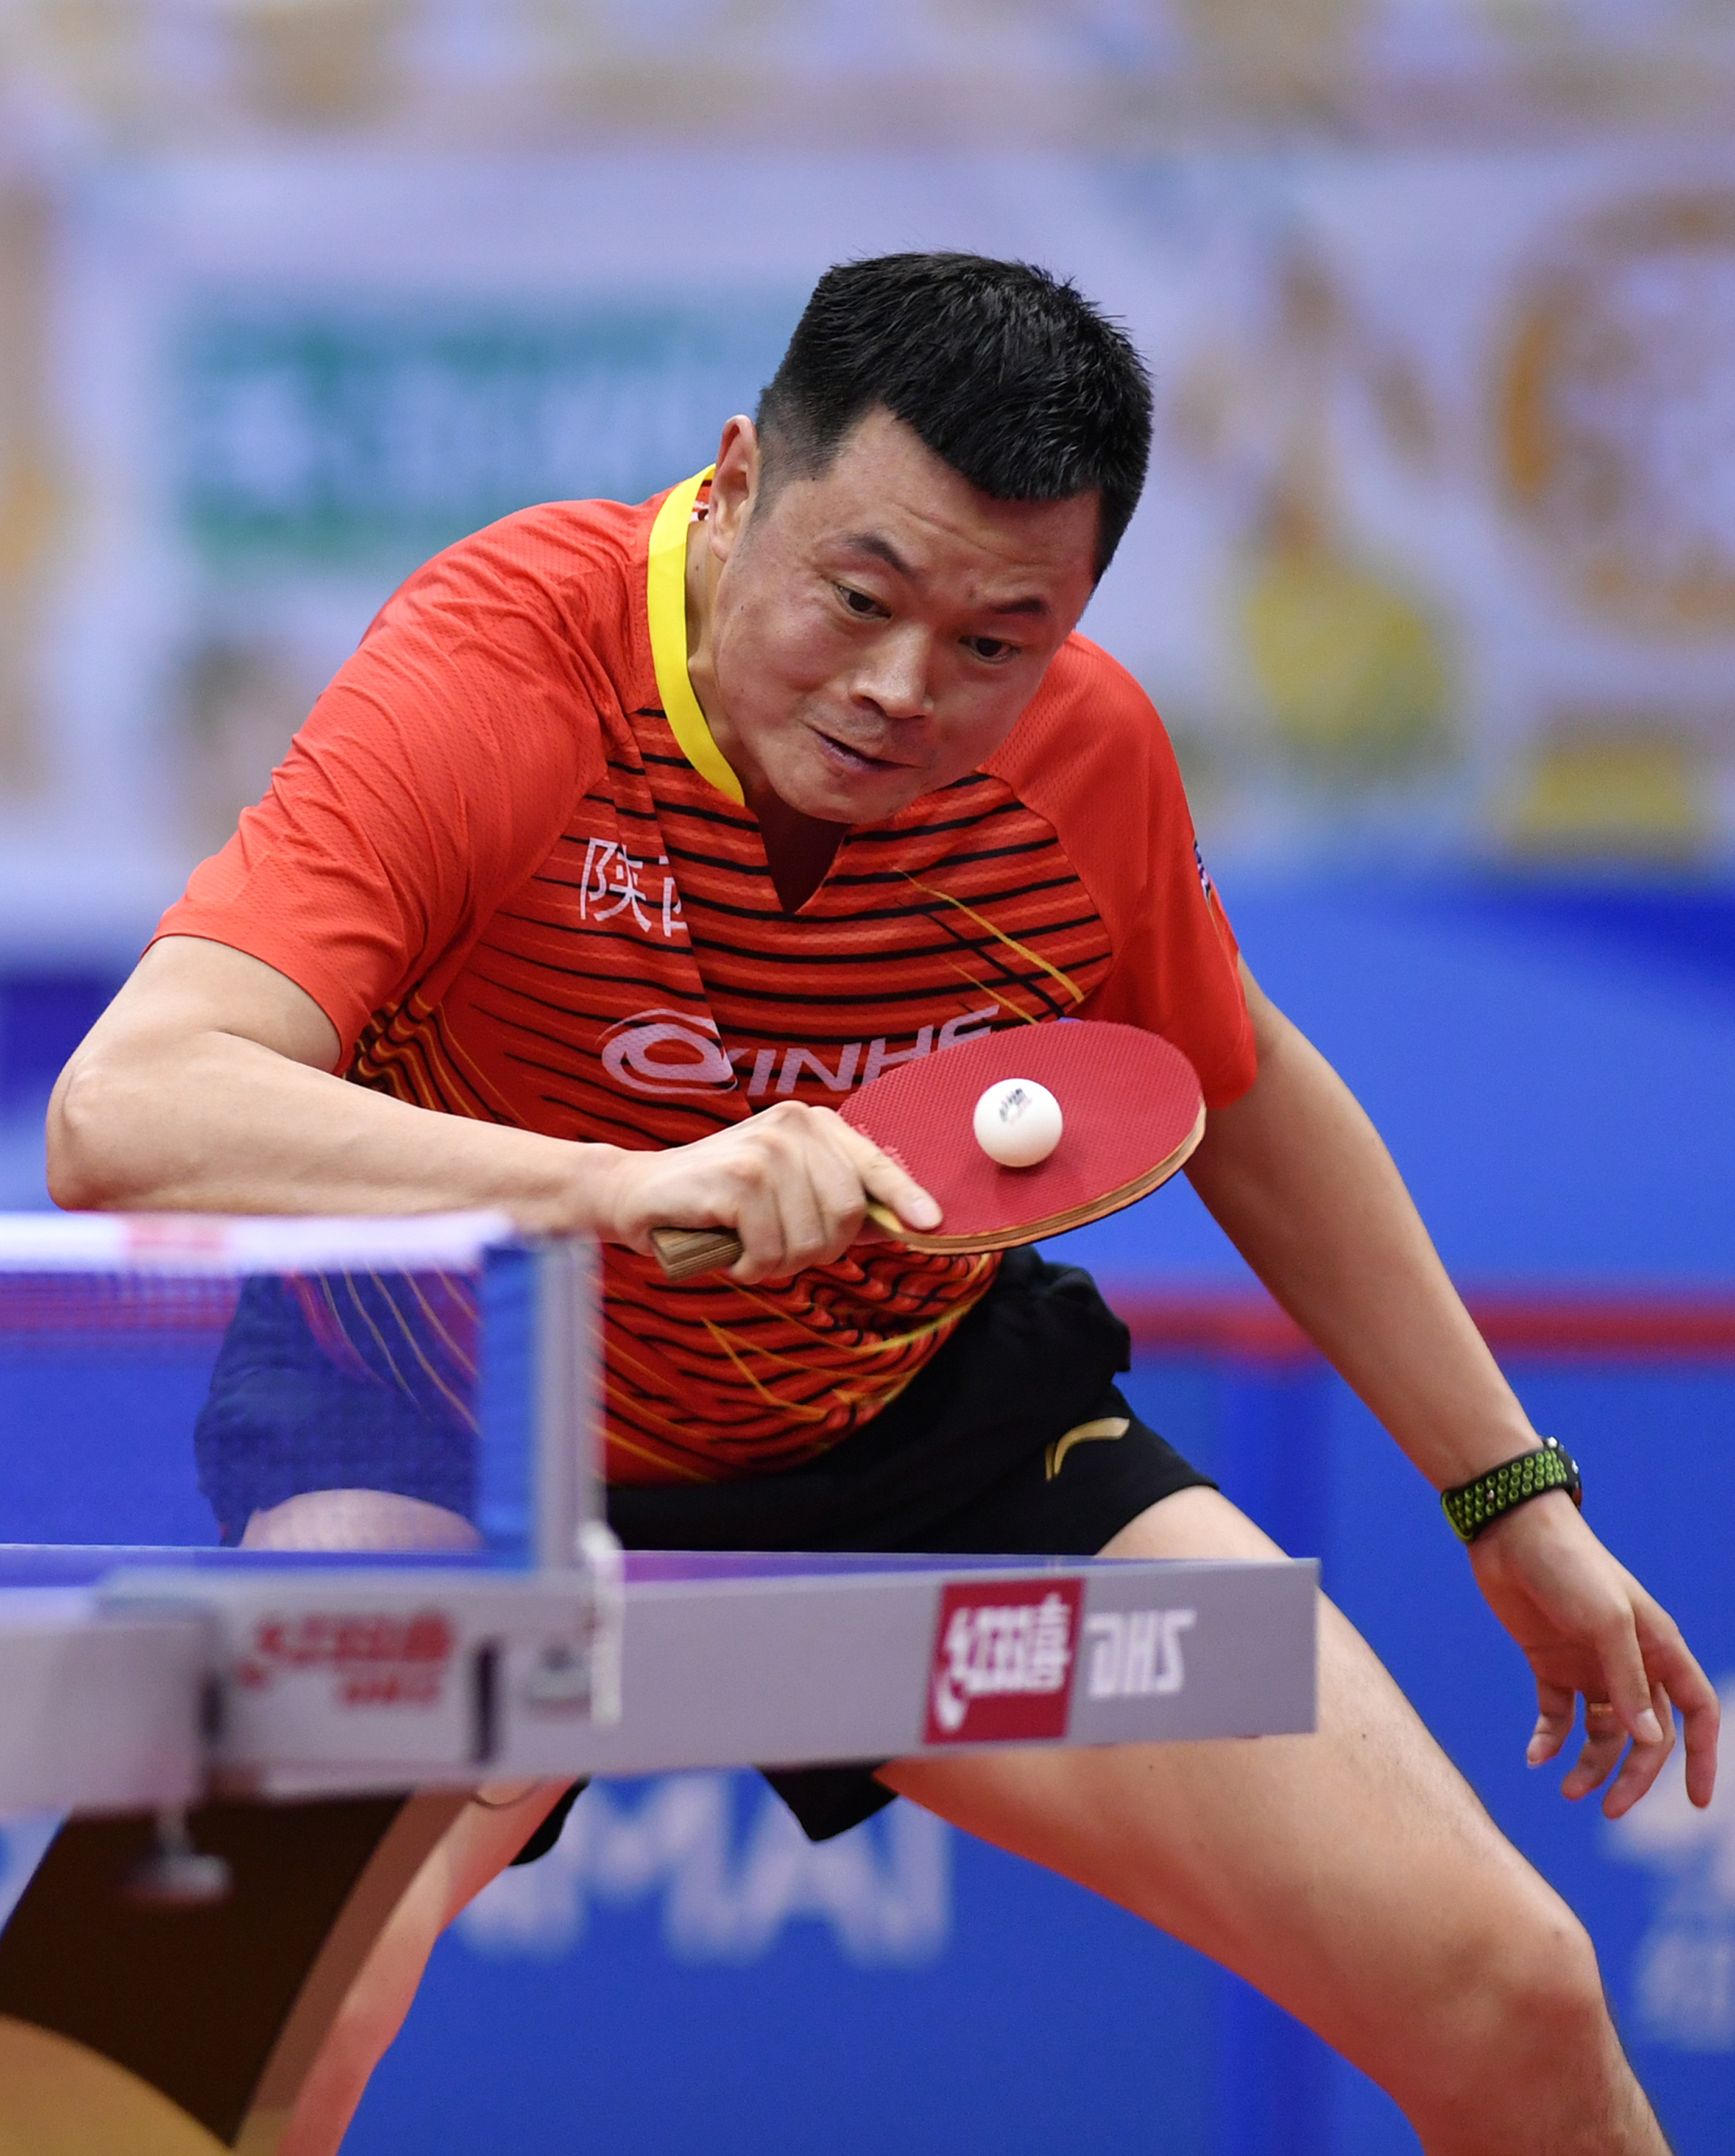 新华社记者李然摄当日,在天津武清举行的2019年全国乒乓球锦标赛男子